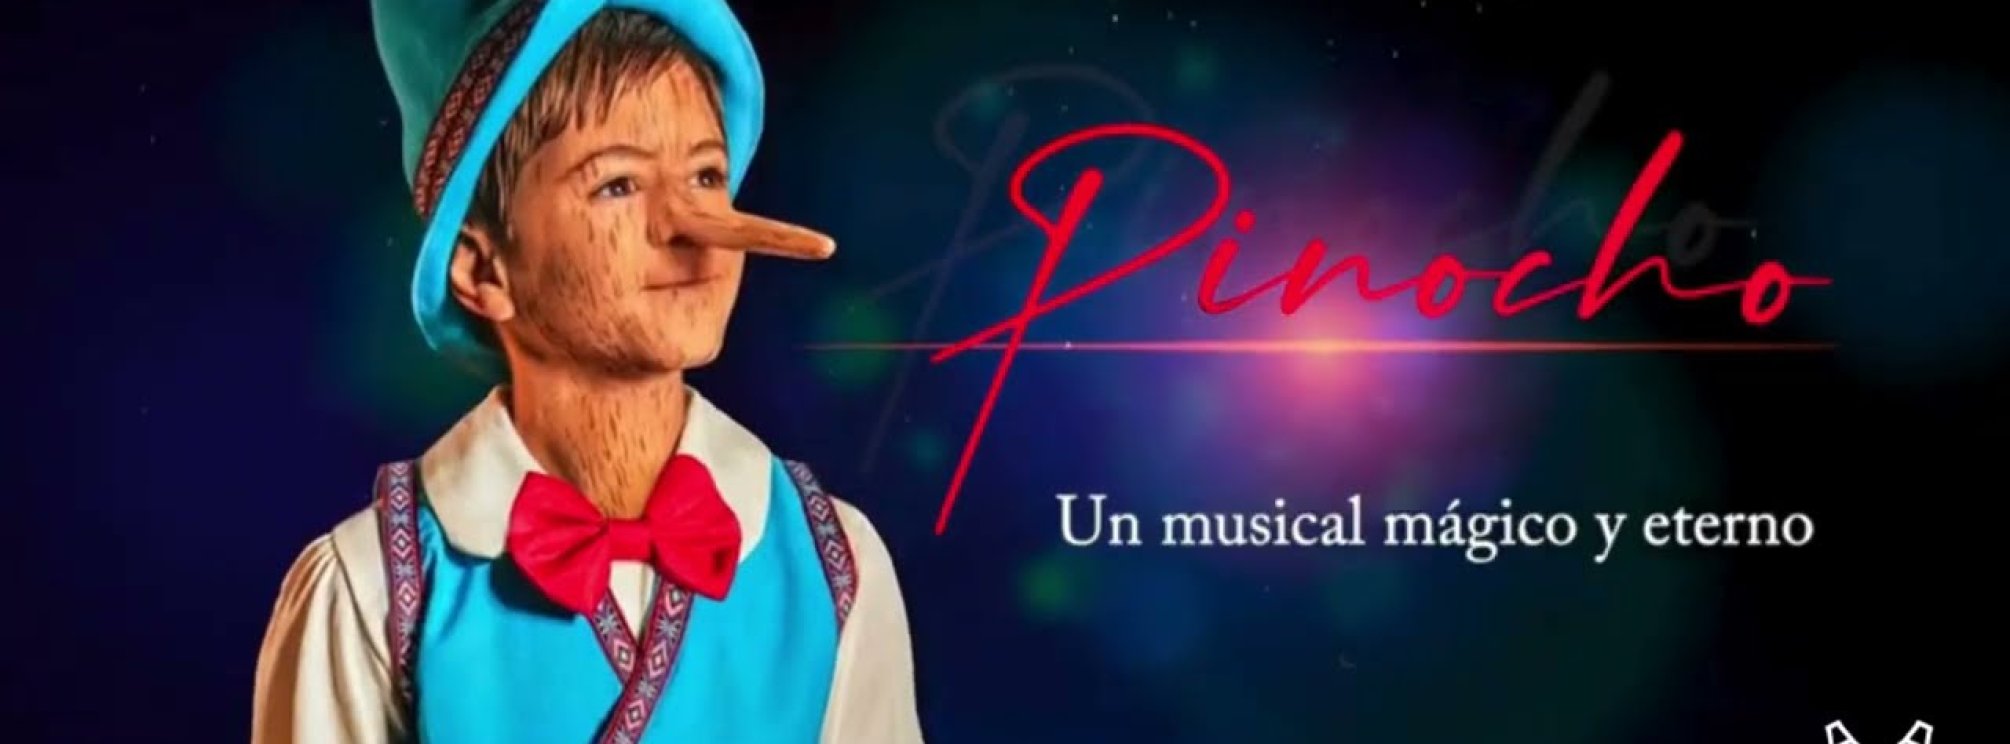 Pinocho. Un musical mágico y eterno